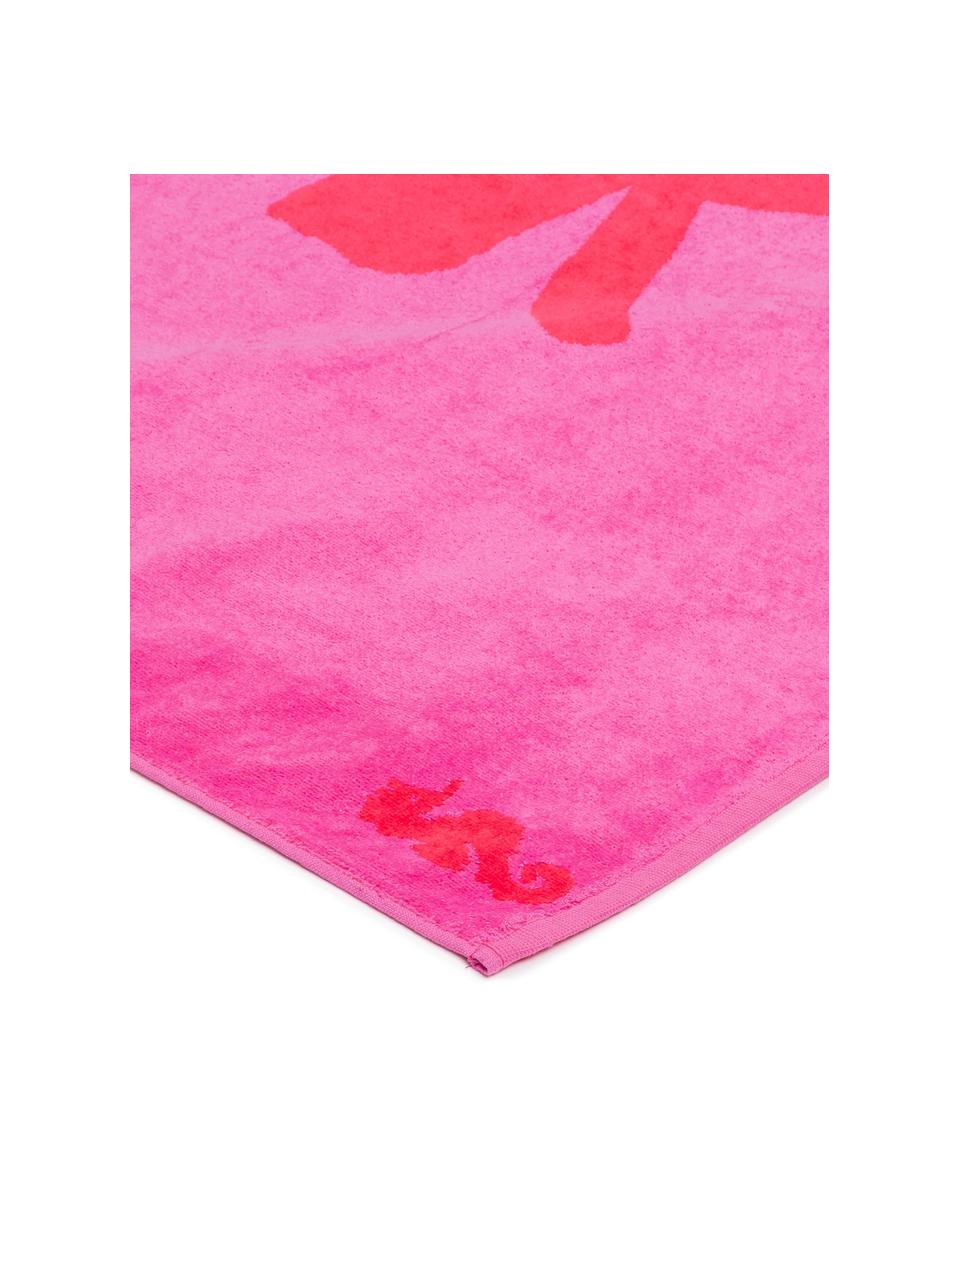 Telo mare Sugar, Retro: Terry (cotone) Media qual, Rosa, rosso, Larg. 100 x Lung. 180 cm